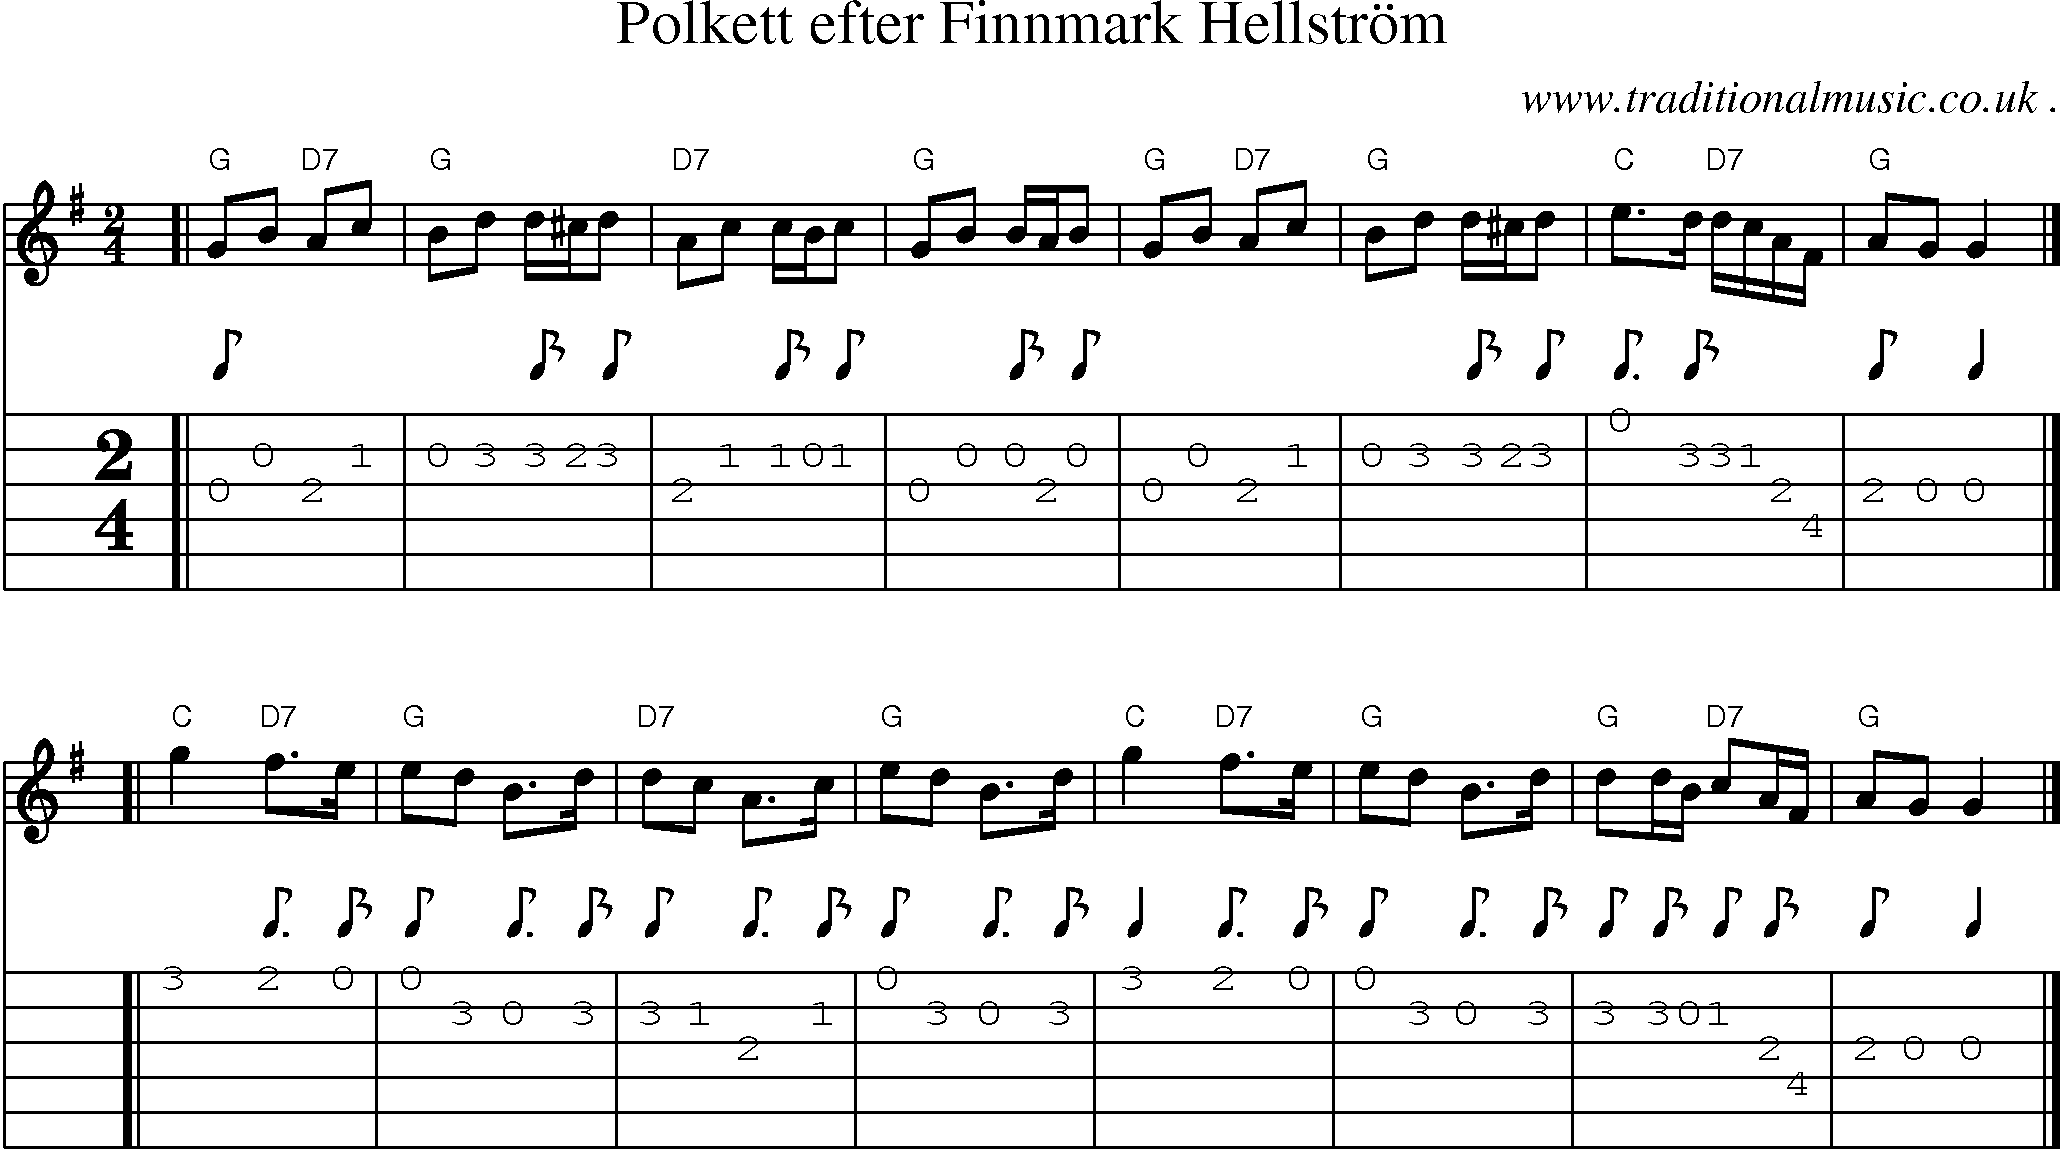 Sheet-music  score, Chords and Guitar Tabs for Polkett Efter Finnmark Hellstrom